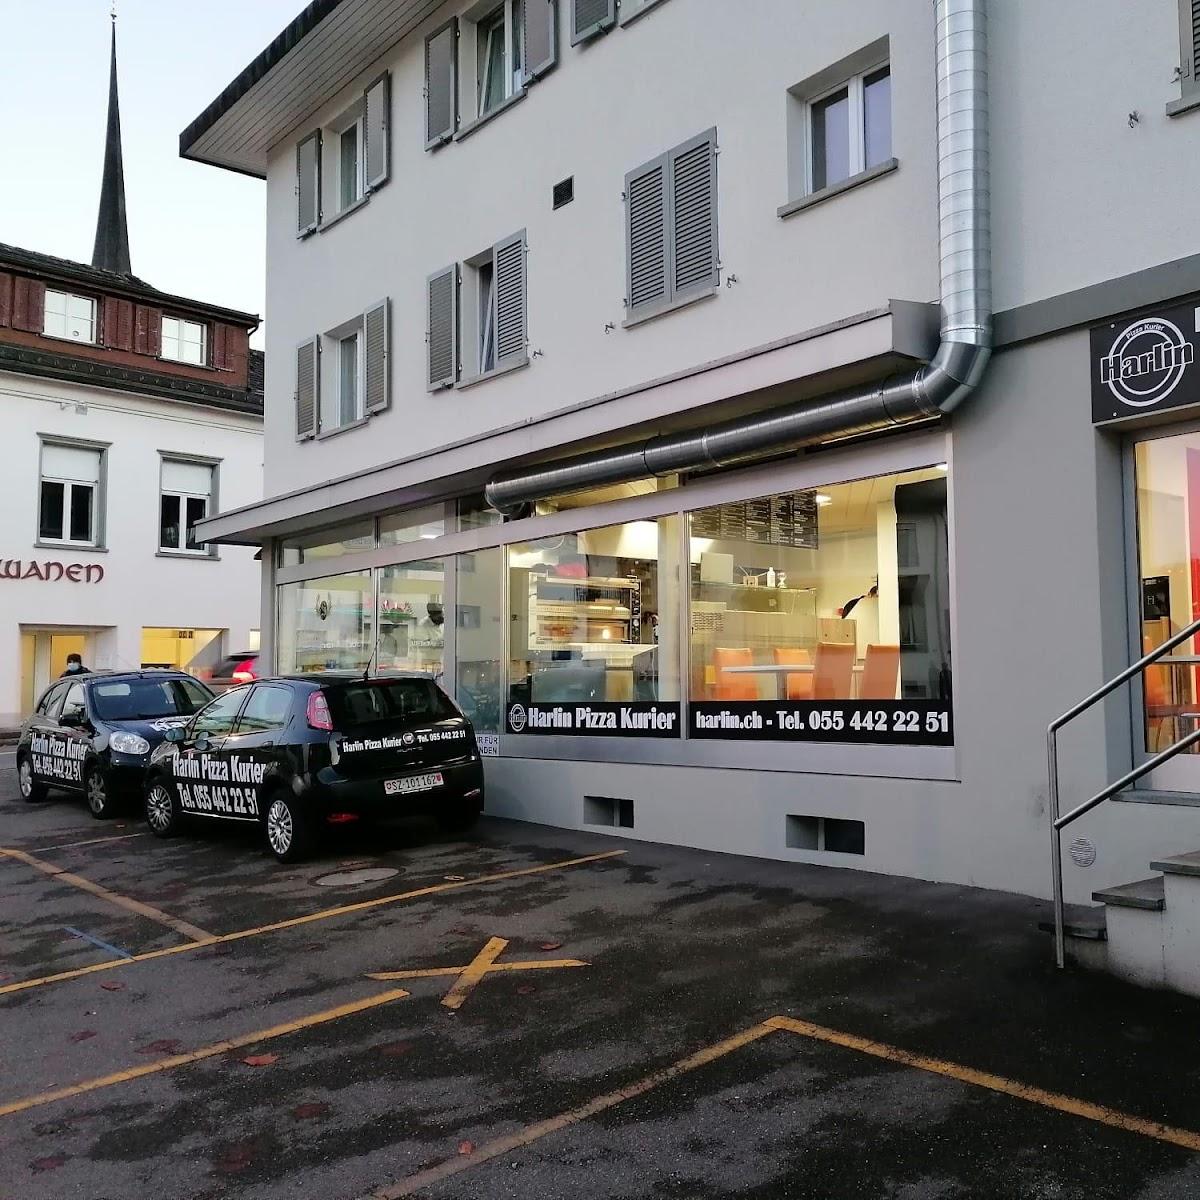 Restaurant "Harlin Pizzakurier-Kebab" in Altendorf